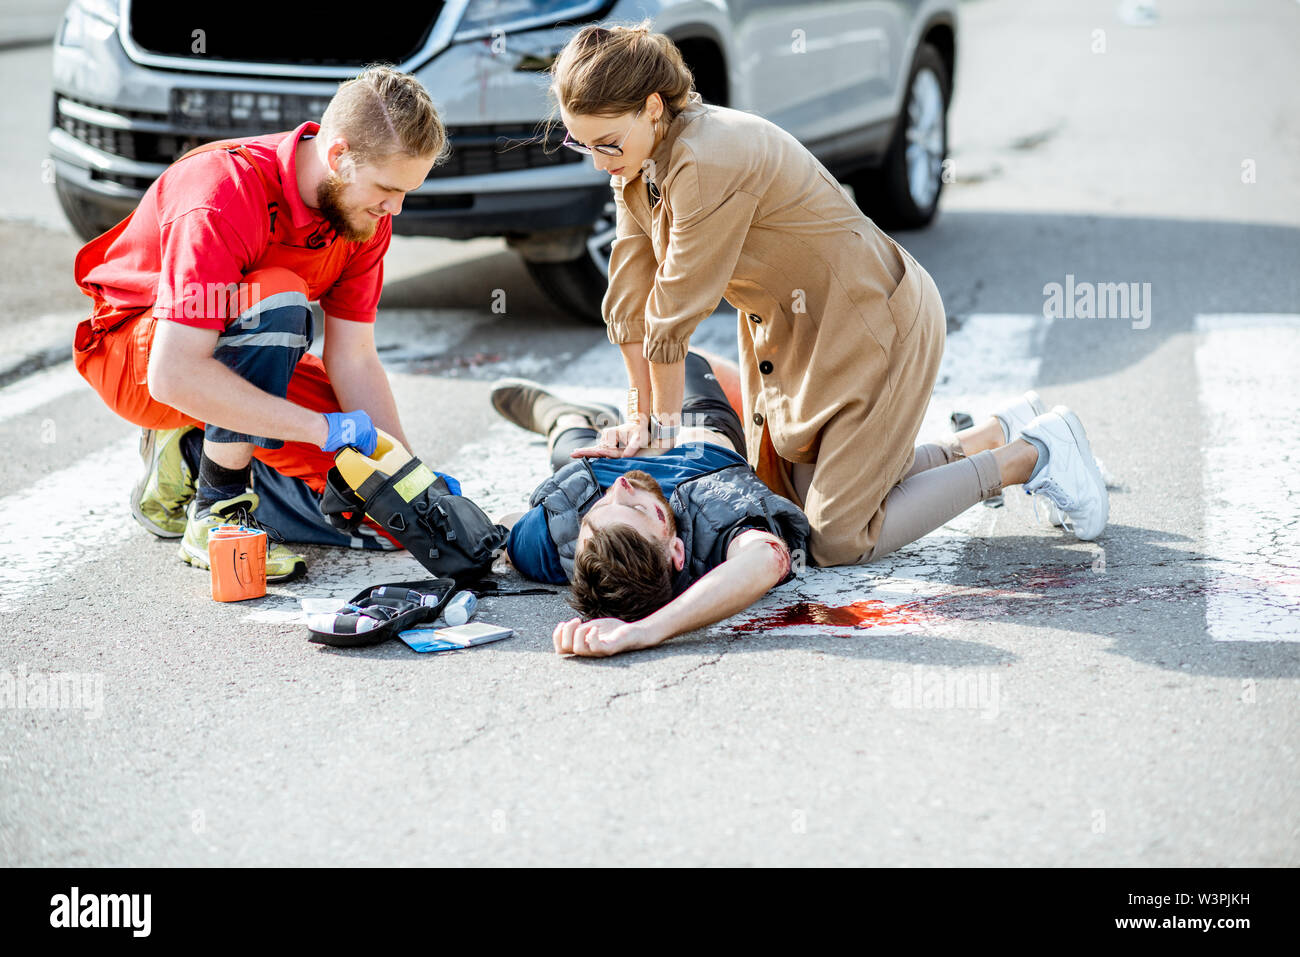 Frau mit ambluance Arbeiter, künstliche Beatmung für die Geschädigte blutender Mann liegen auf dem Fußgängerüberweg nach dem Verkehrsunfall Stockfoto